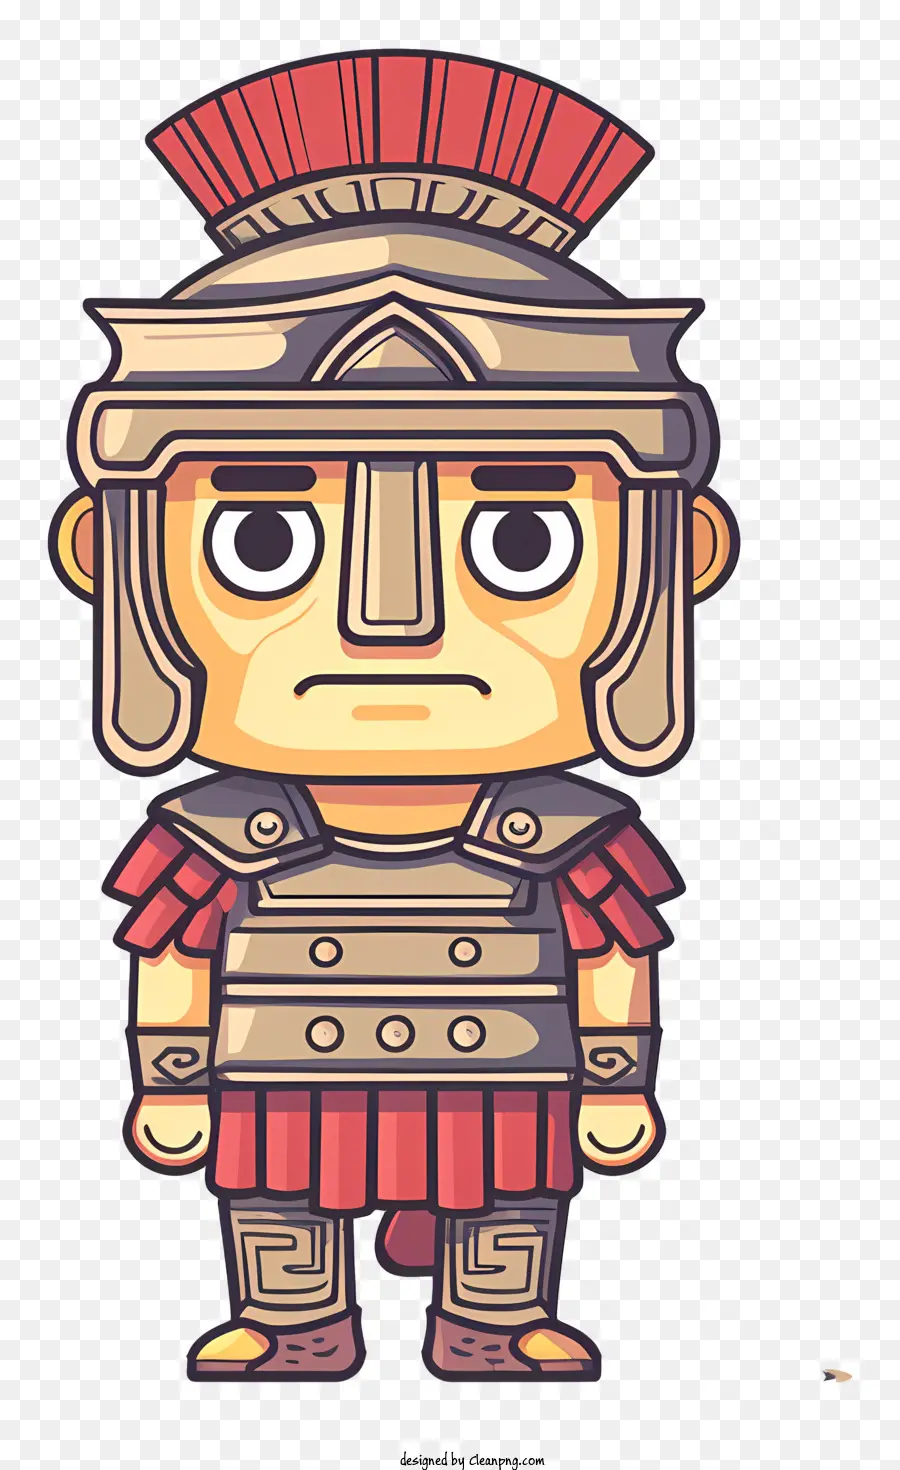 Antike Rom -Soldat Roman Warrior Cartoon Depiction Armor Helm - Cartoon Roman Warrior mit wütendem Ausdruck spricht